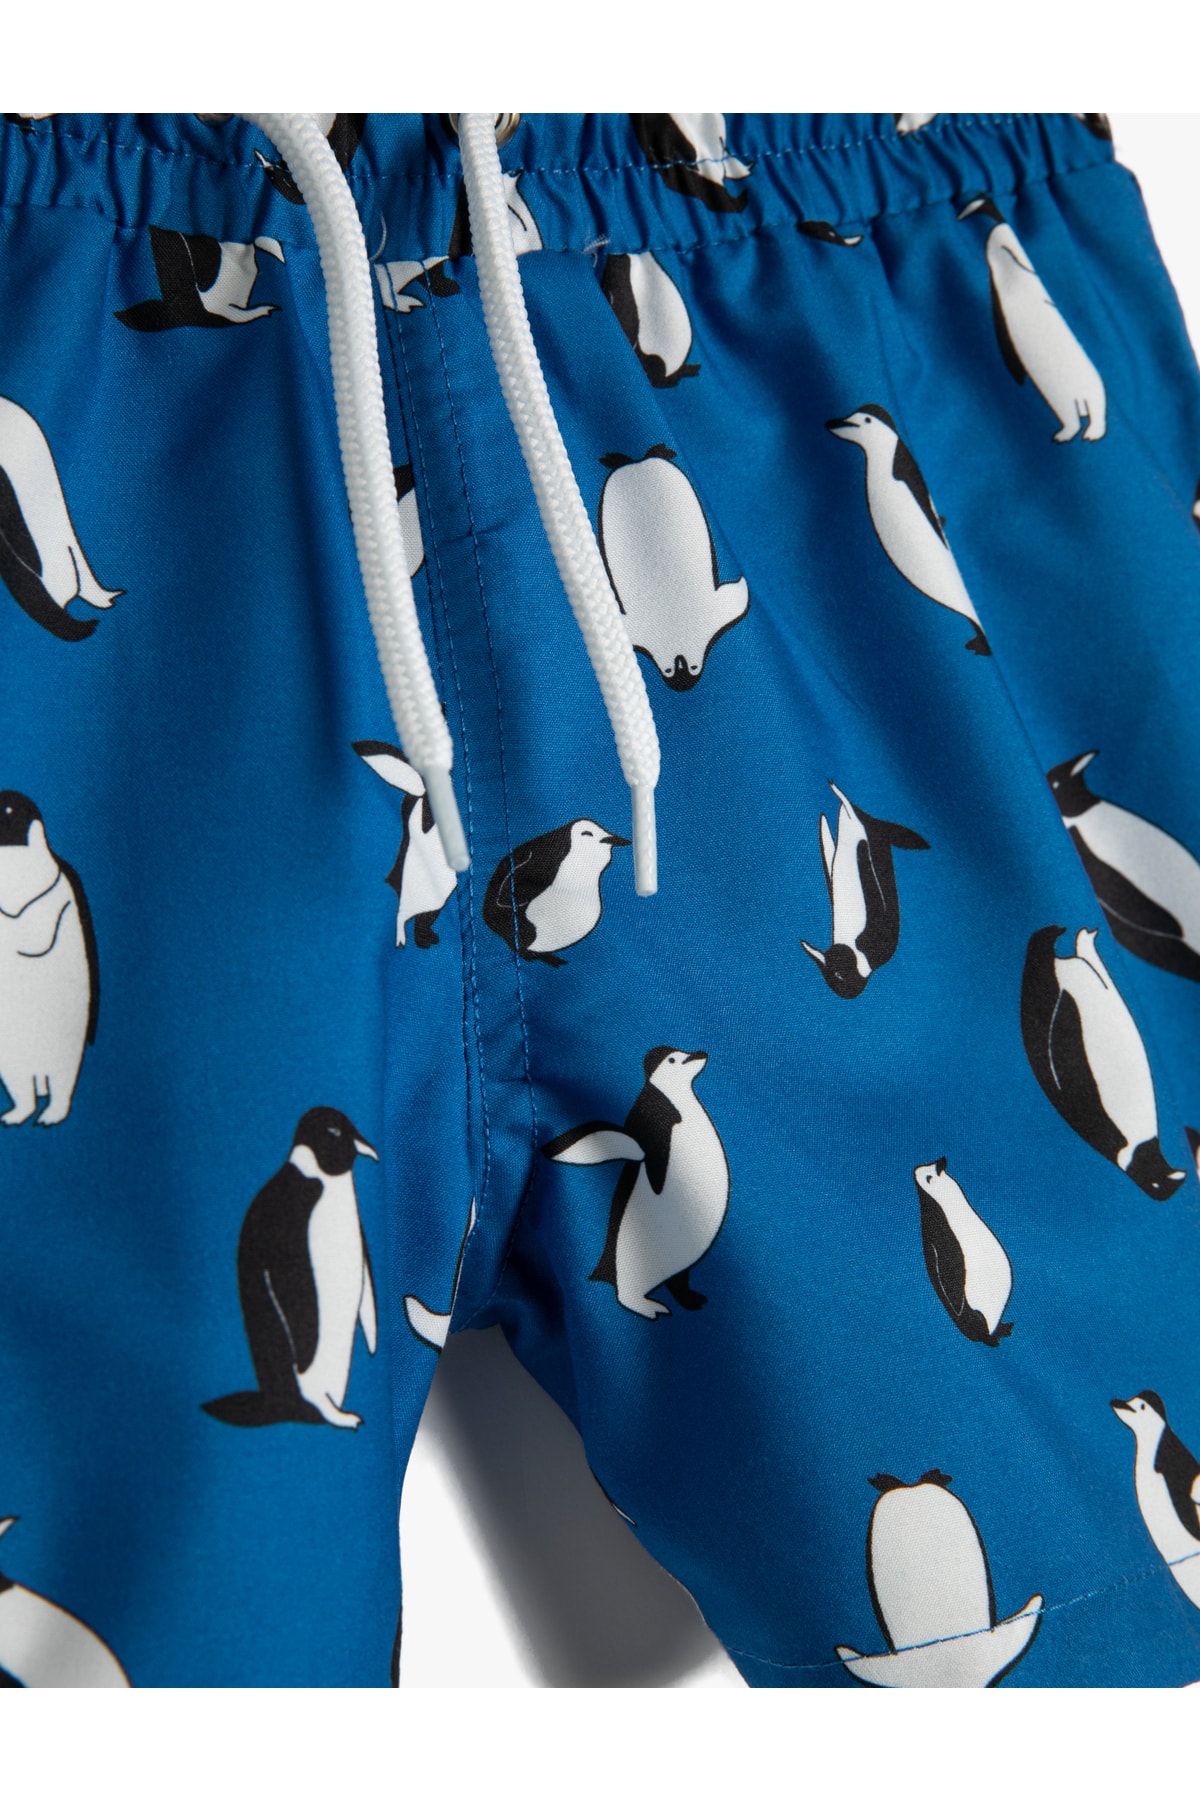 Levně Koton Tie Waist Swimwear Penguin Print Mesh Lined.